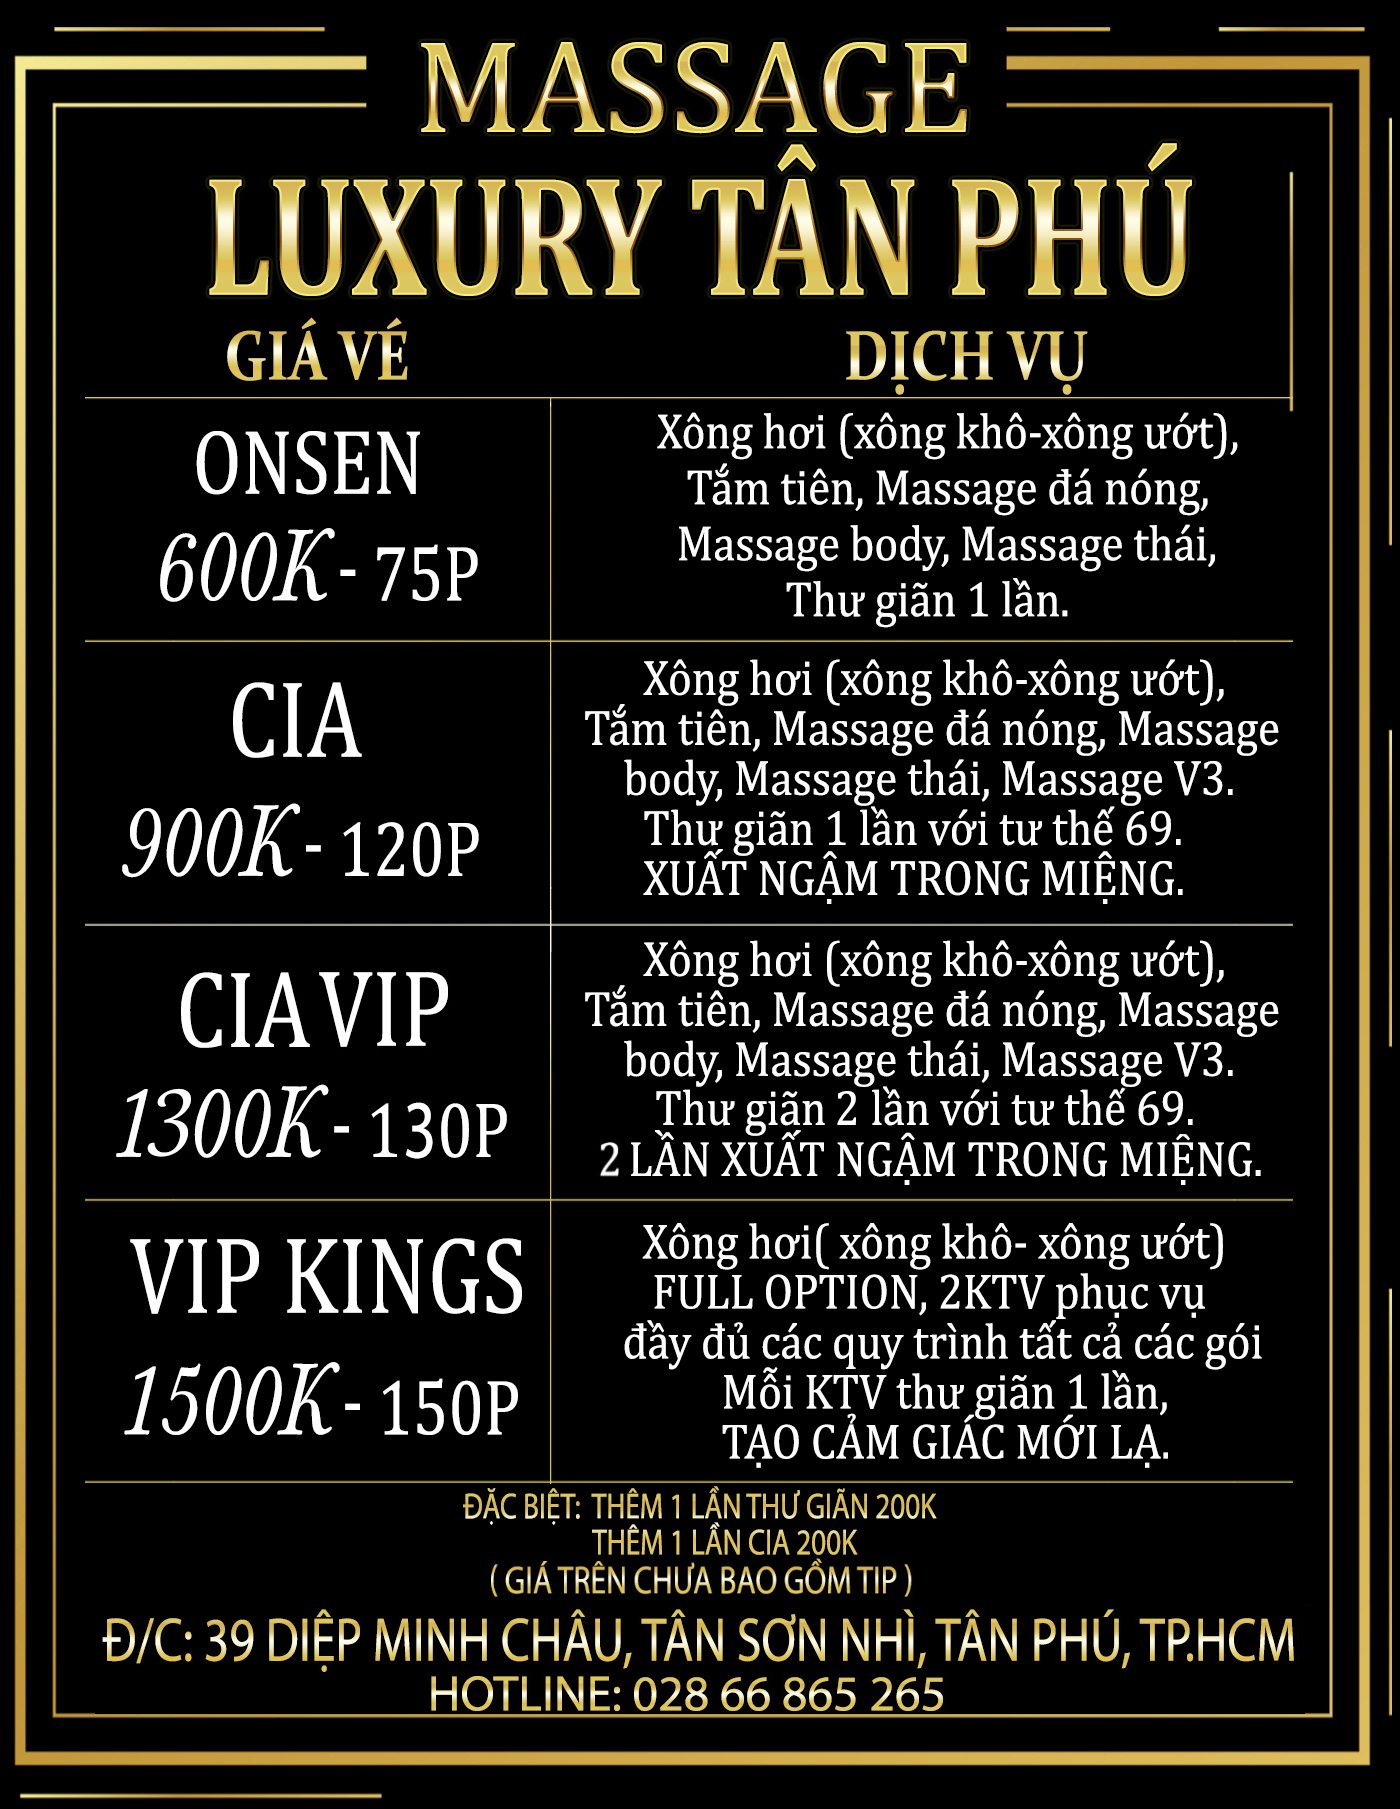 Massage Tân Phú Giá Vé Massage Luxury Tp Cộng Đồng Thư Giãn Cộng Đồng Massage 3 Miền